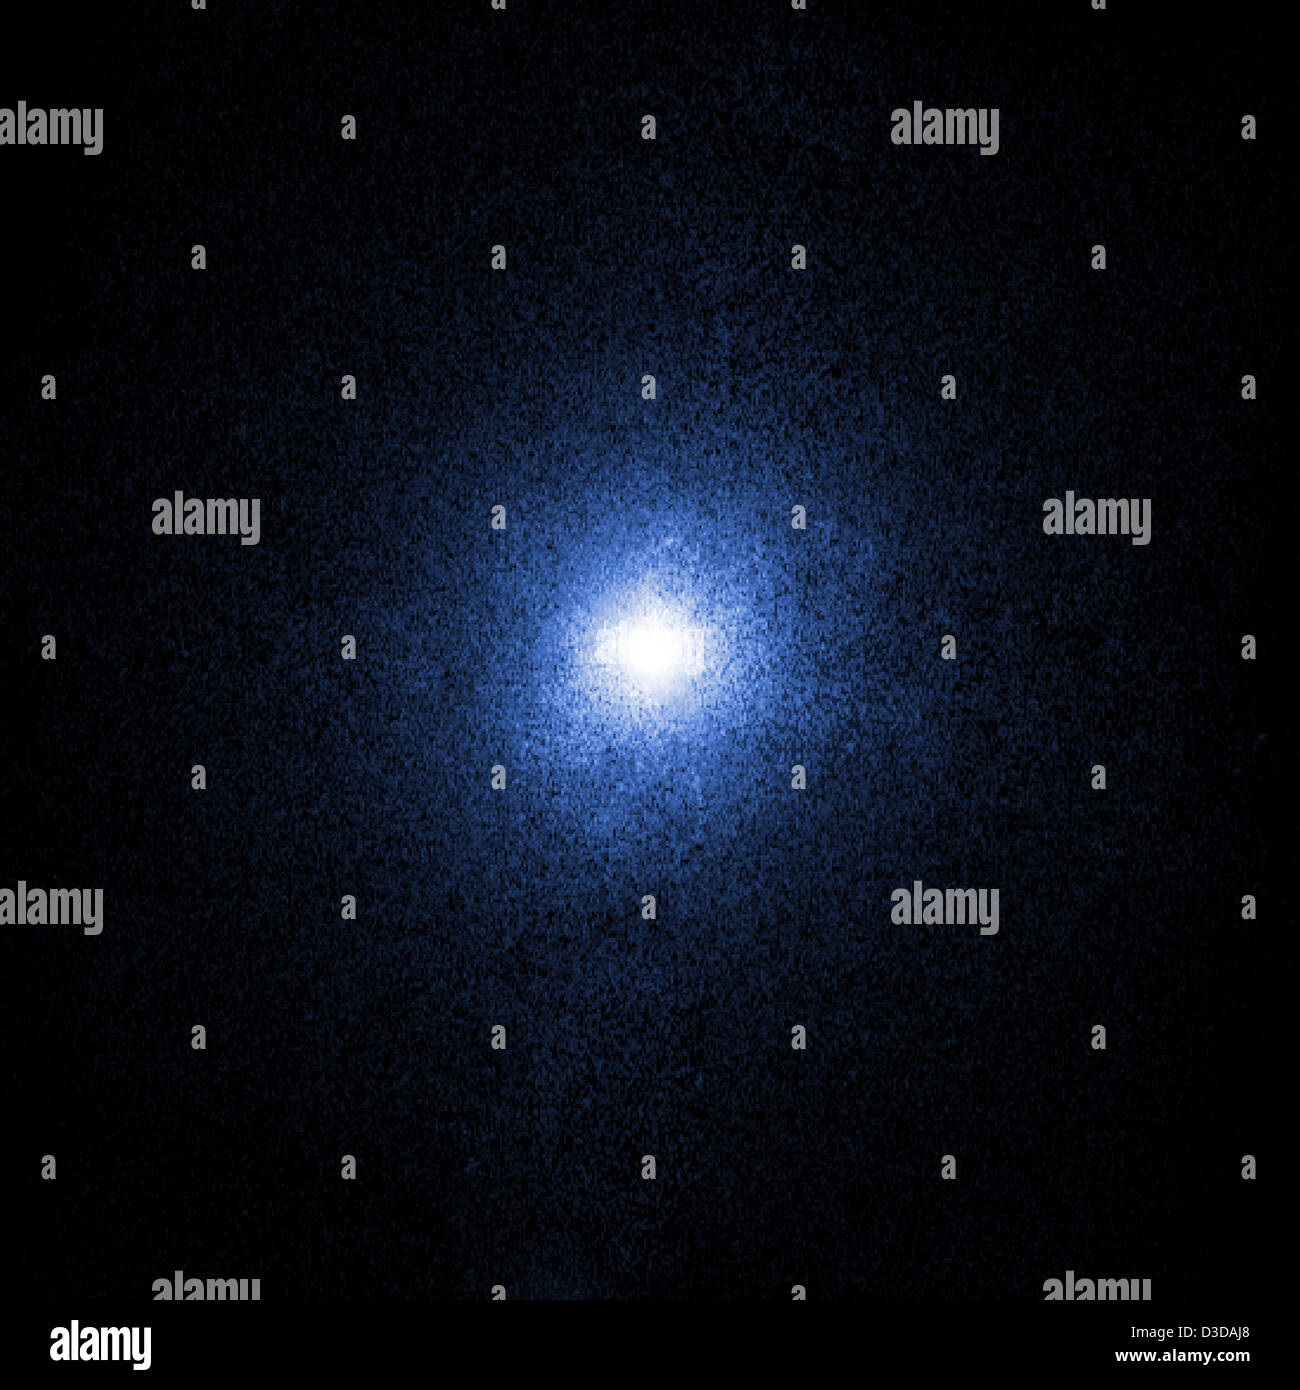 Cygnus x-1 im Röntgenlicht (NASA, Chandra, 17.11.11) Stockfoto